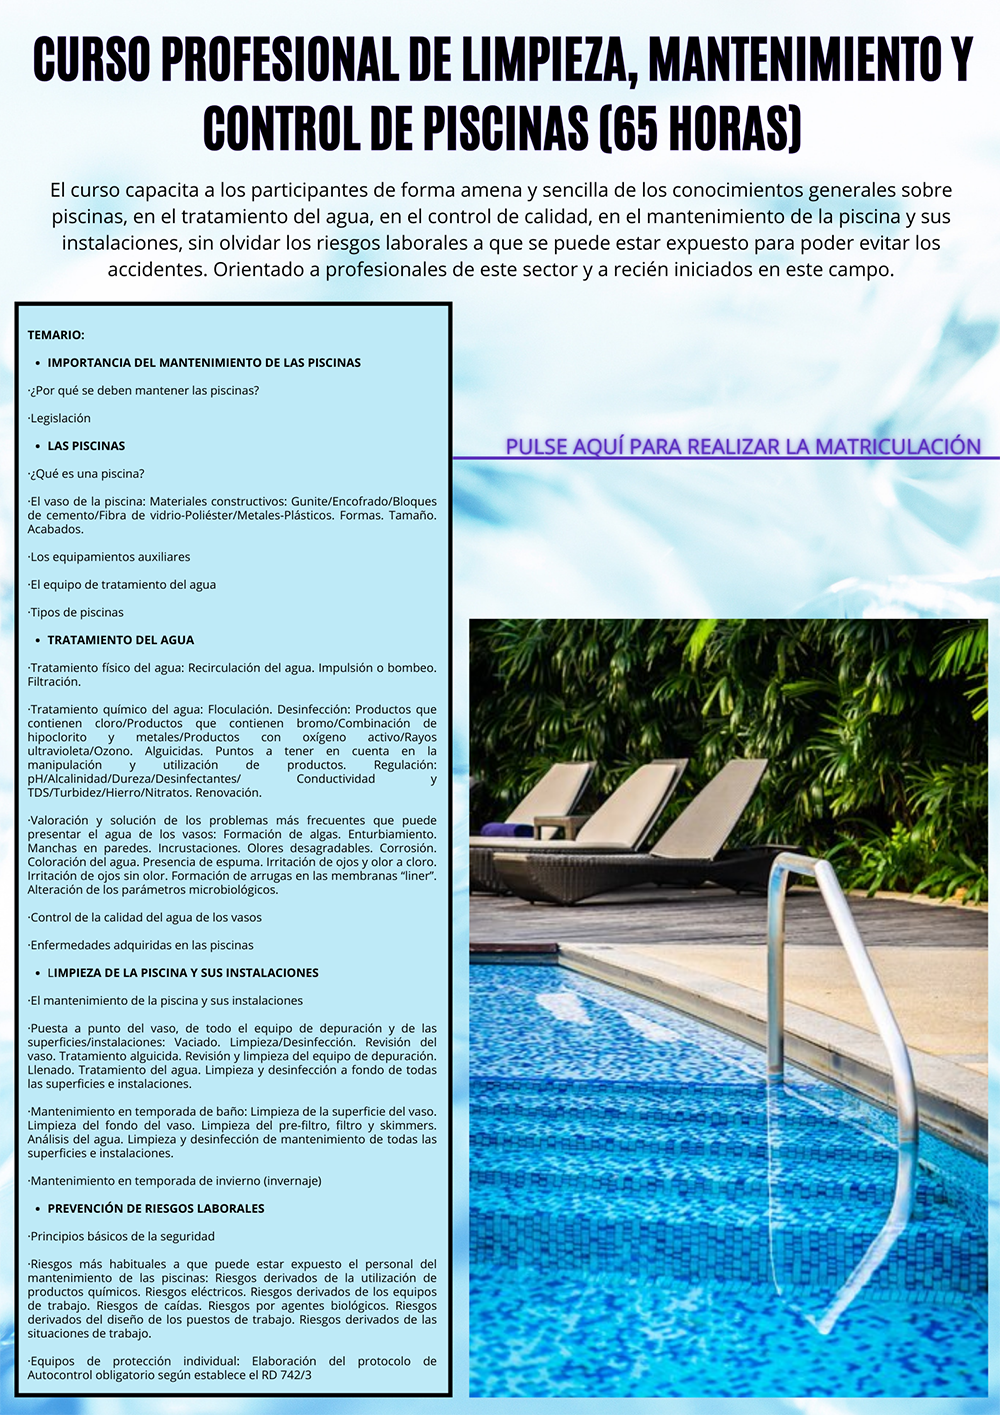 CURSO ON-LINE: Curso profesional de limpieza, mantenimiento y control de piscinas (65 horas)